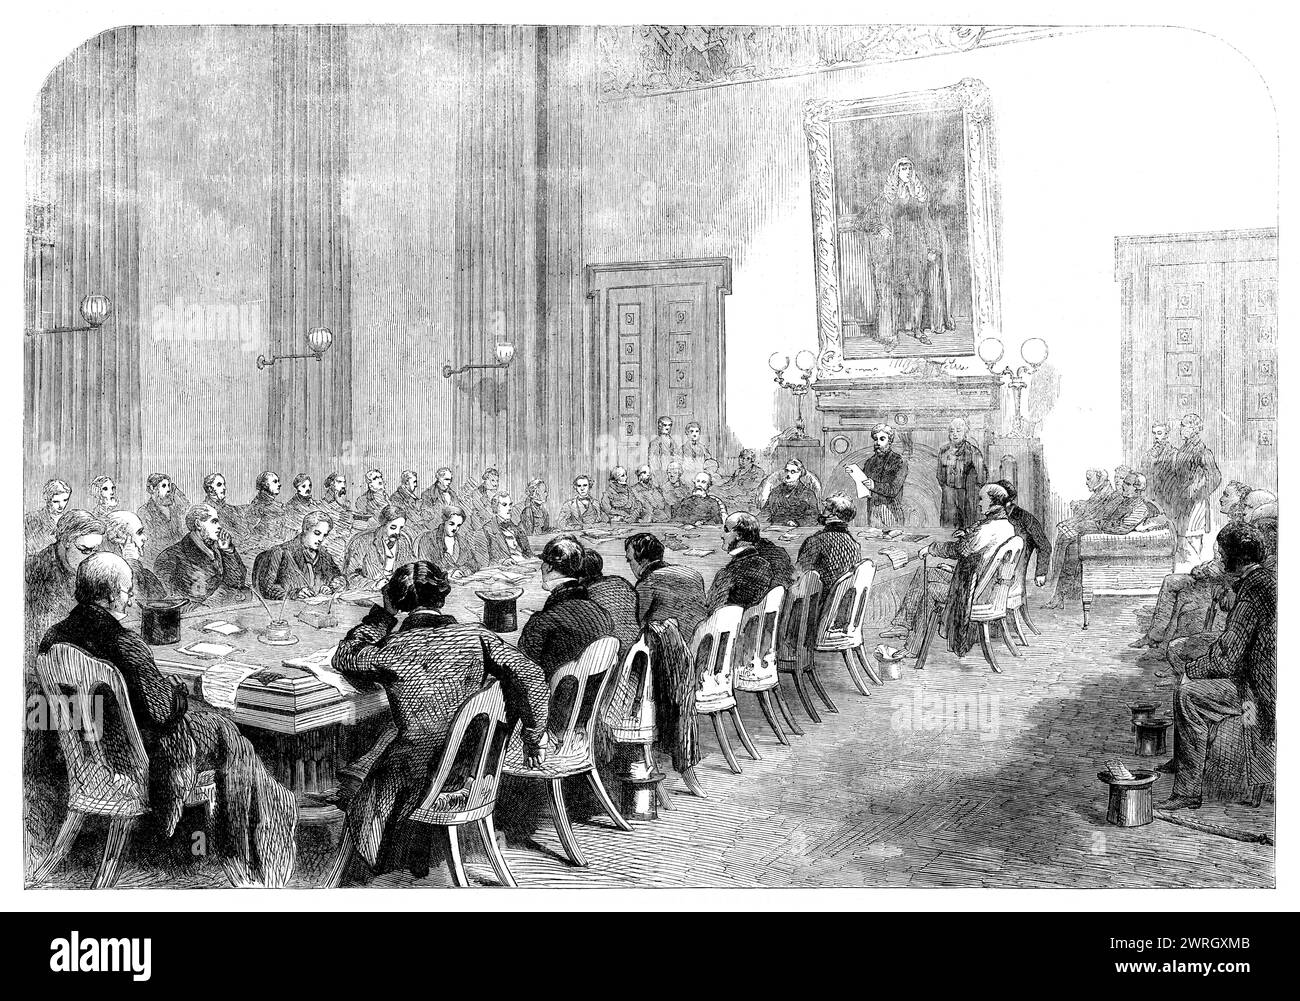 The Cotton Hunger: Sitzung des zentralen Hilfskomitees im Bürgermeistersaal in Manchester - Earl Derby in the Chair, 1862. Die Lancashire Cotton Famine (1861–65) war eine Depression in der Textilindustrie Nordwestenglands, die durch Überproduktion in einer Zeit sich abzeichnender Weltmärkte hervorgerufen wurde. Sie fiel mit der Unterbrechung der Baumwollballen infolge des Amerikanischen Bürgerkriegs zusammen und Spekulanten kauften neue Lagerbestände für die Lagerung in Lagerhäusern auf. Die Baumwollpreise stiegen in China nach dem Zweiten Opiumkrieg und während der Taiping-Rebellion. Der Anstieg der Baumwolle pri Stockfoto